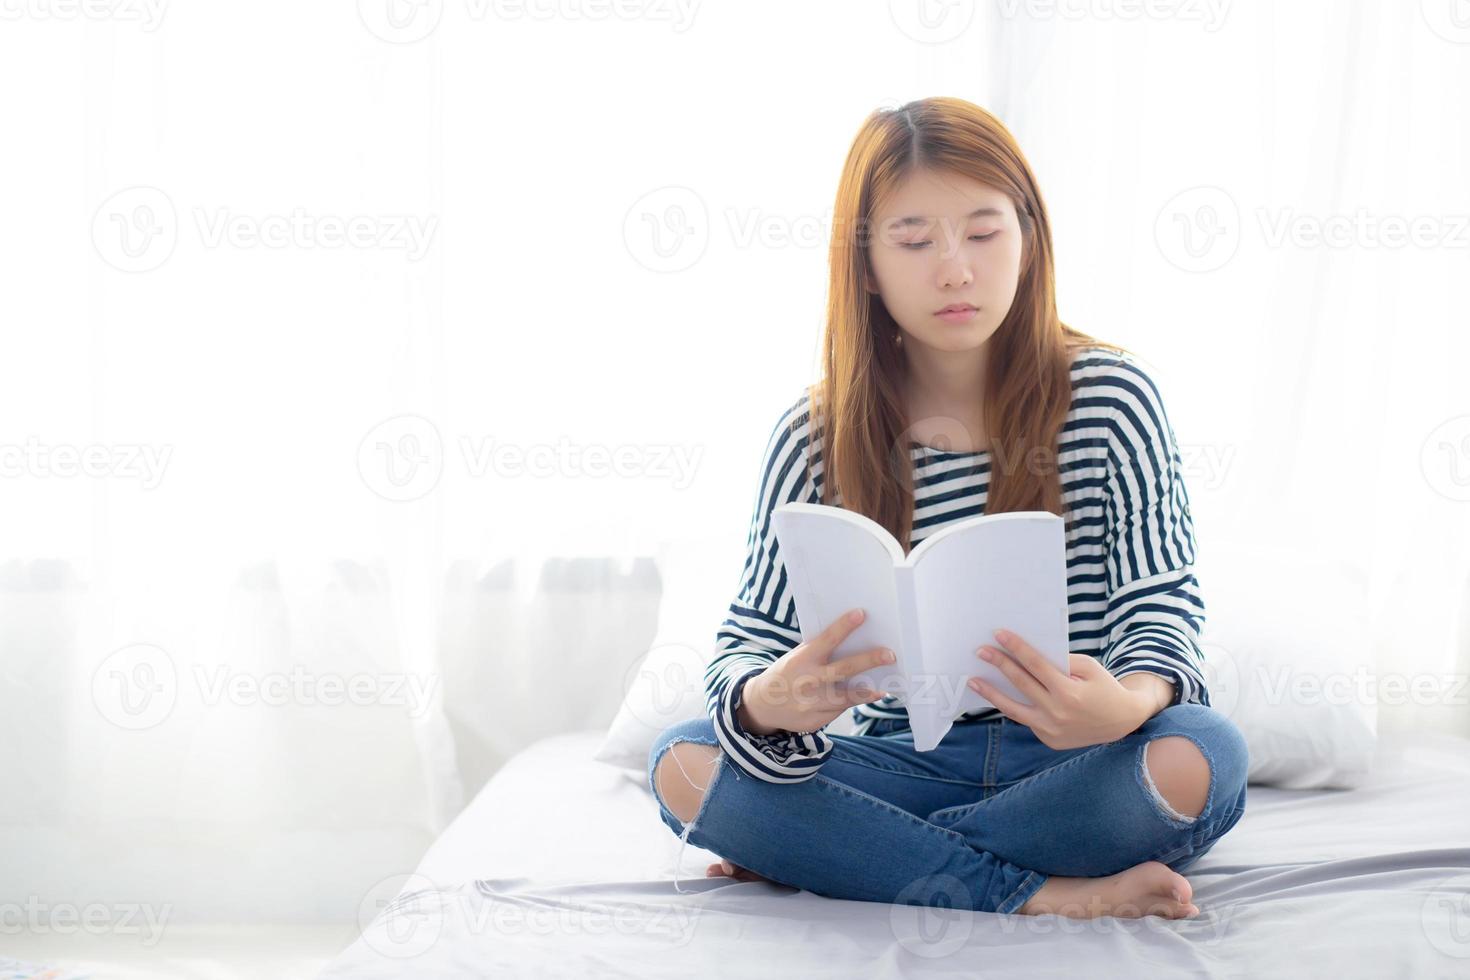 hermoso de retrato joven mujer asiática relajarse sentado leyendo un libro en el dormitorio en casa, la literatura de estudio de la niña, la educación y el concepto de estilo de vida. foto